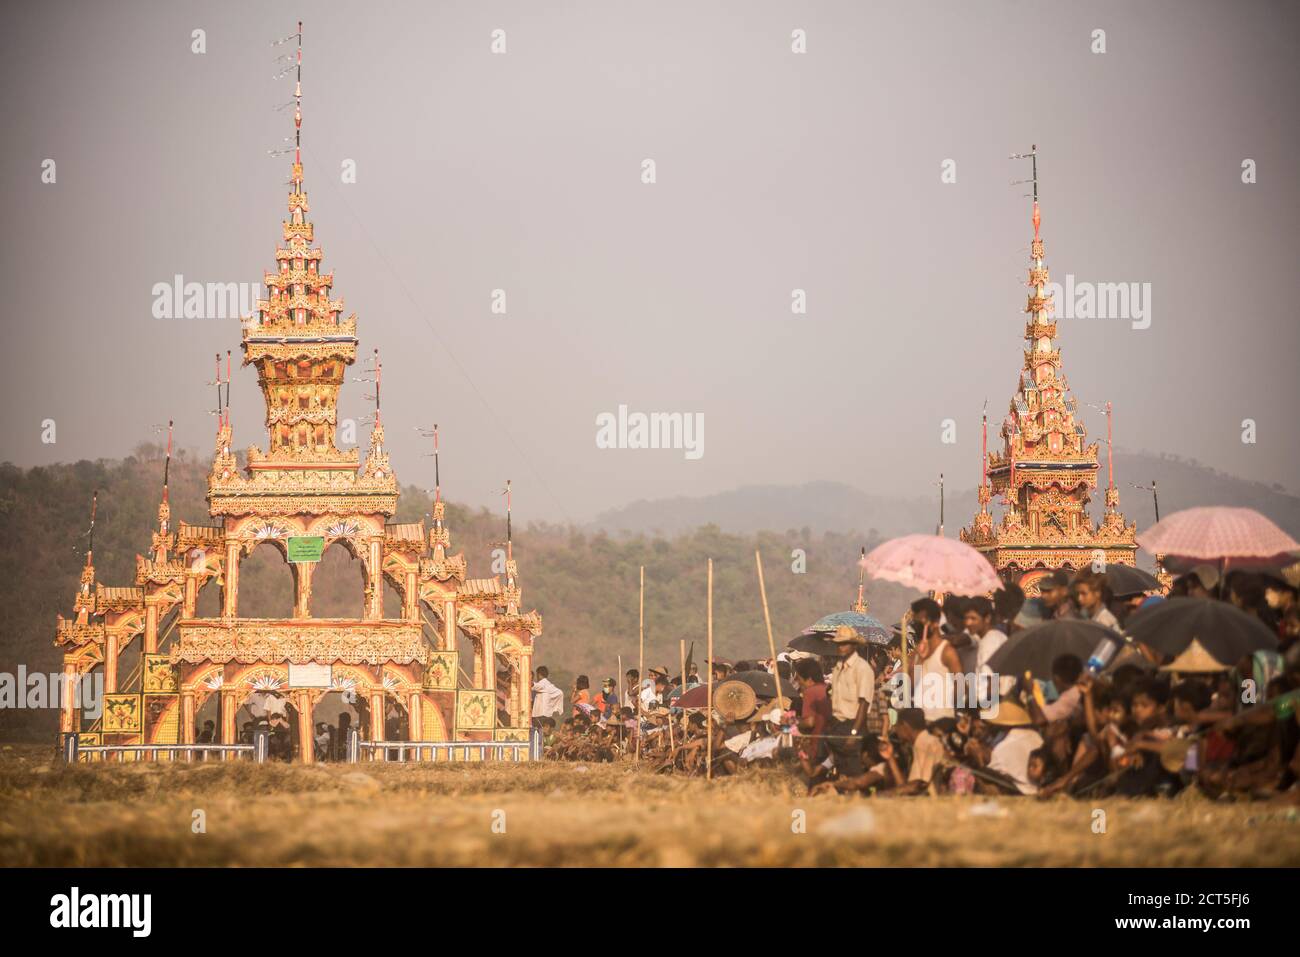 Mrauk U, Dung BWE Festival per il passaggio di un importante monaco buddista, Rakhine state, Myanmar (Birmania) Foto Stock